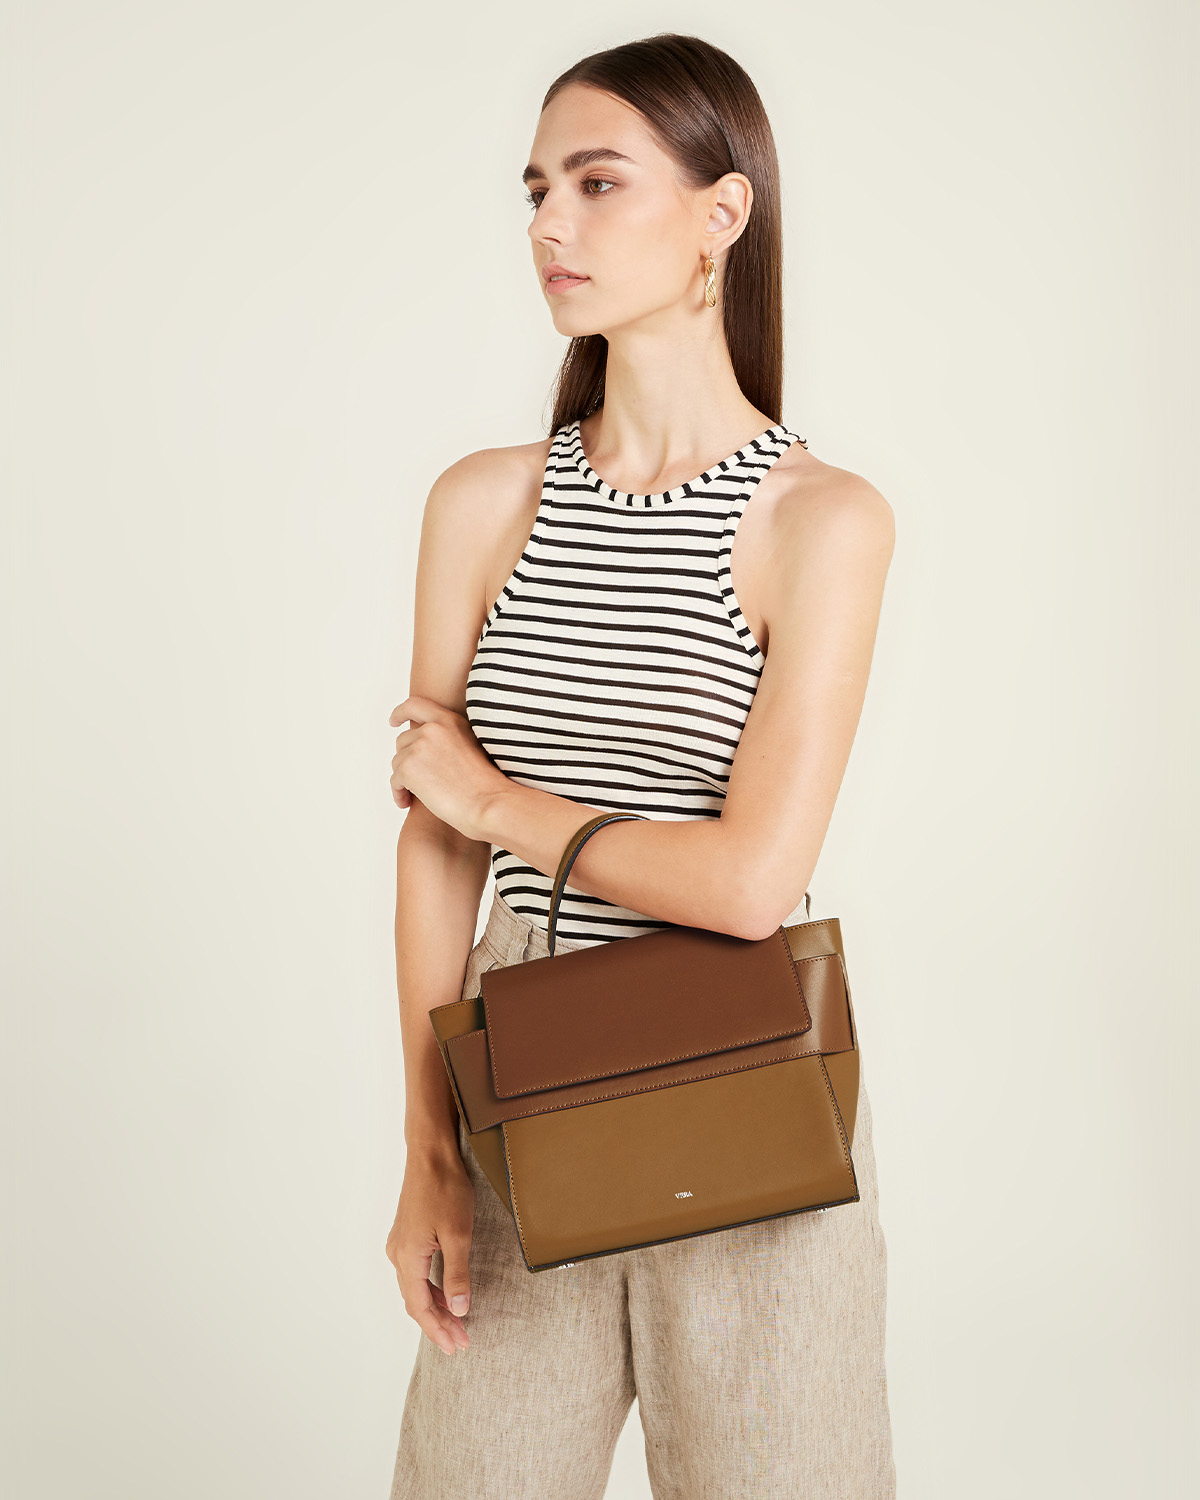 กระเป๋าถือหนังแท้ VERA Margo Leather Handbag, Size 24 สี Caramel